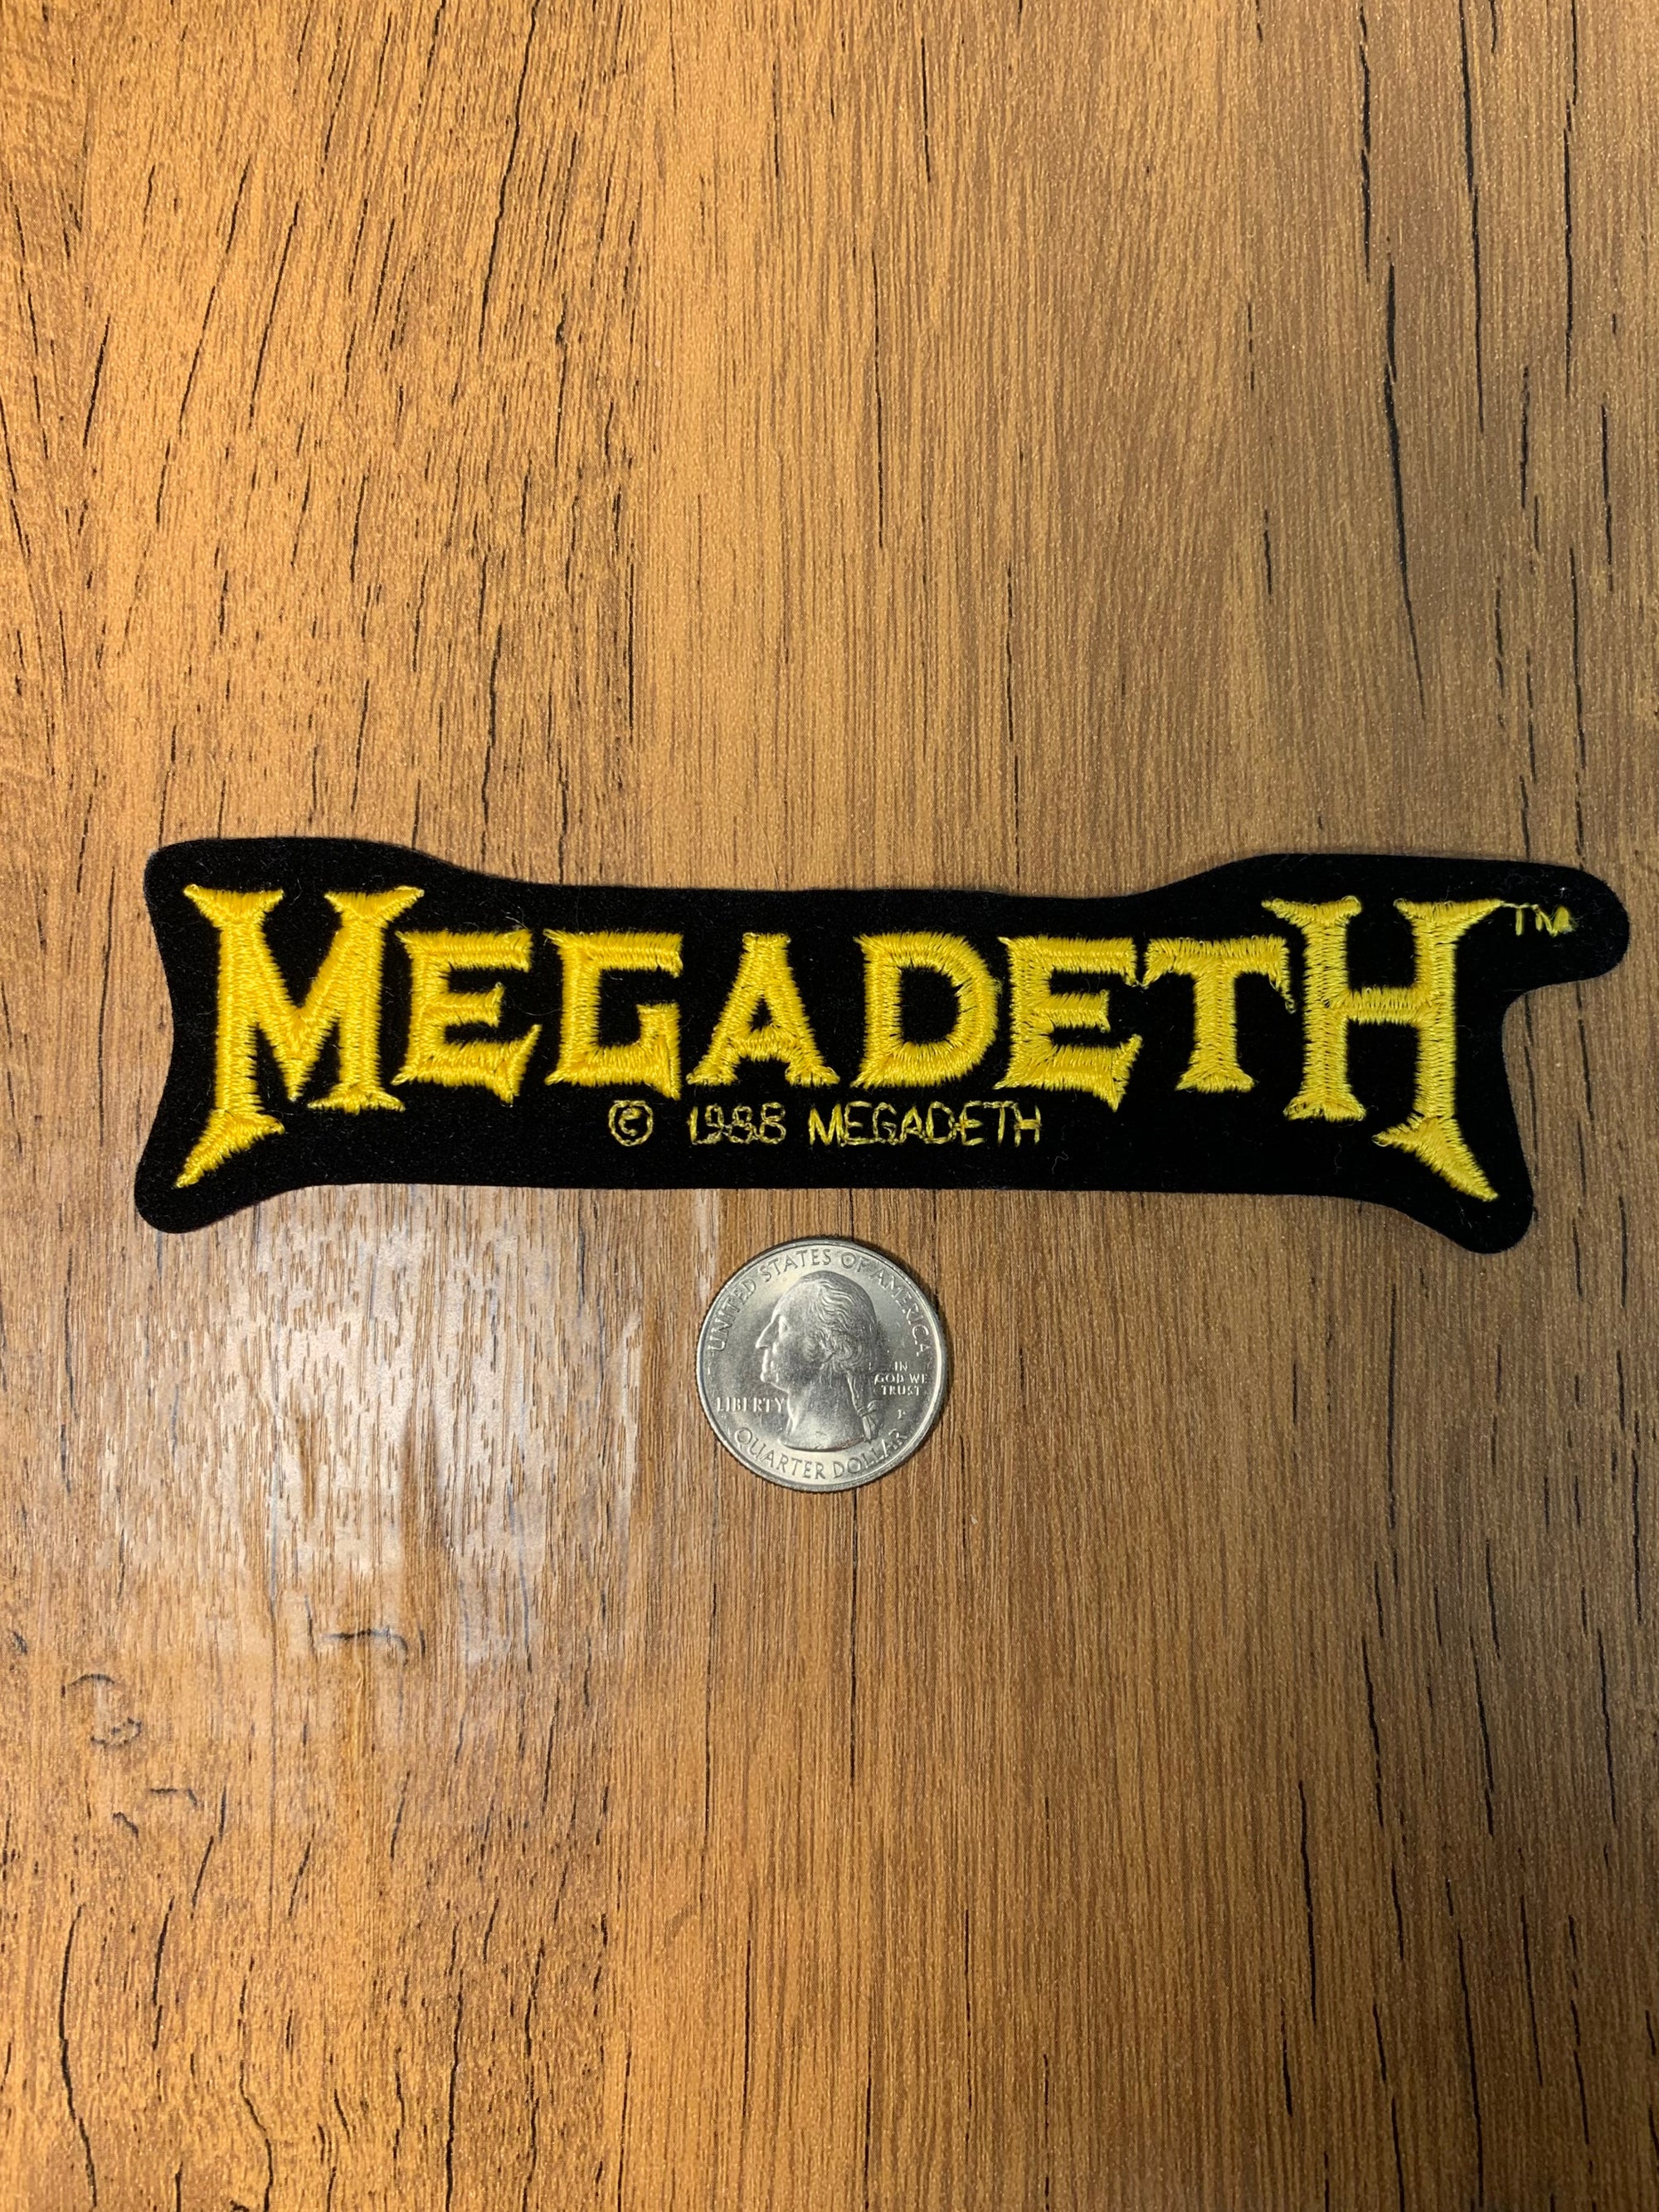 Vintage Megadeth